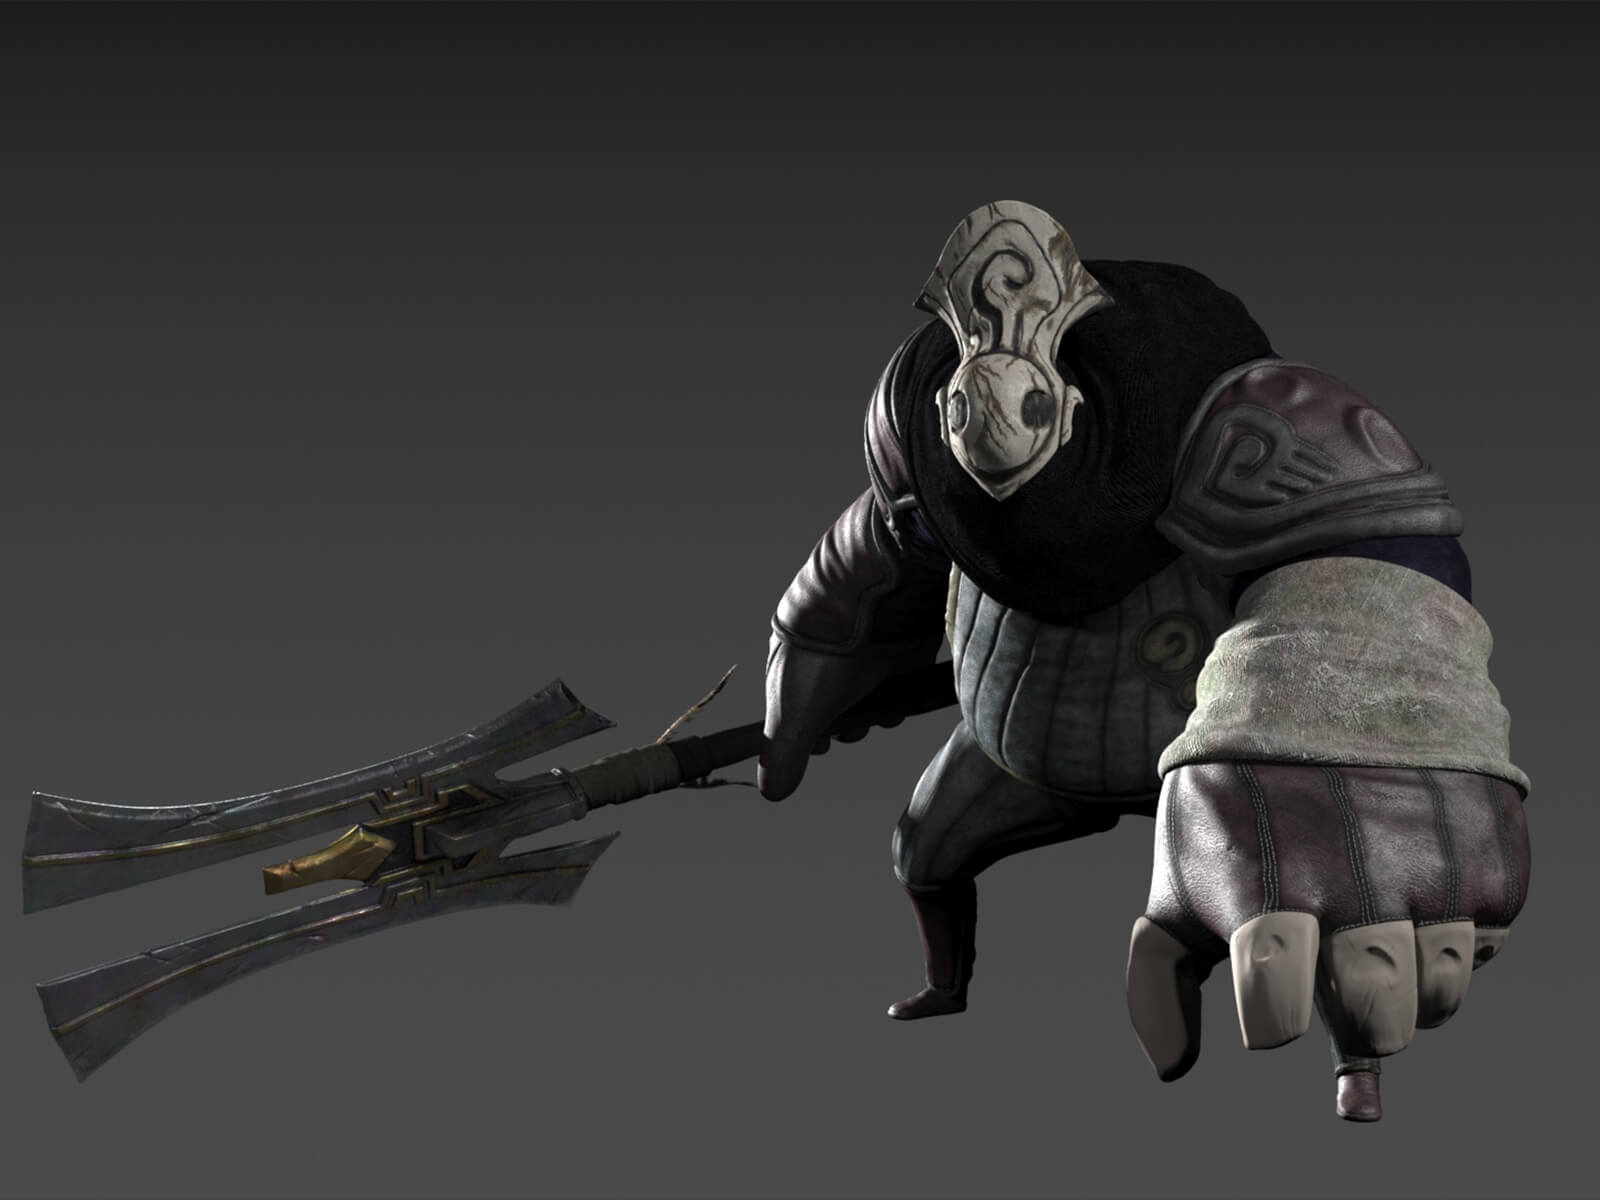 Un robusto personaje en 3D con su equipo de batalla de tela y una máscara gris desgastada sostiene, a un lado, un arma grande de dos puntas.